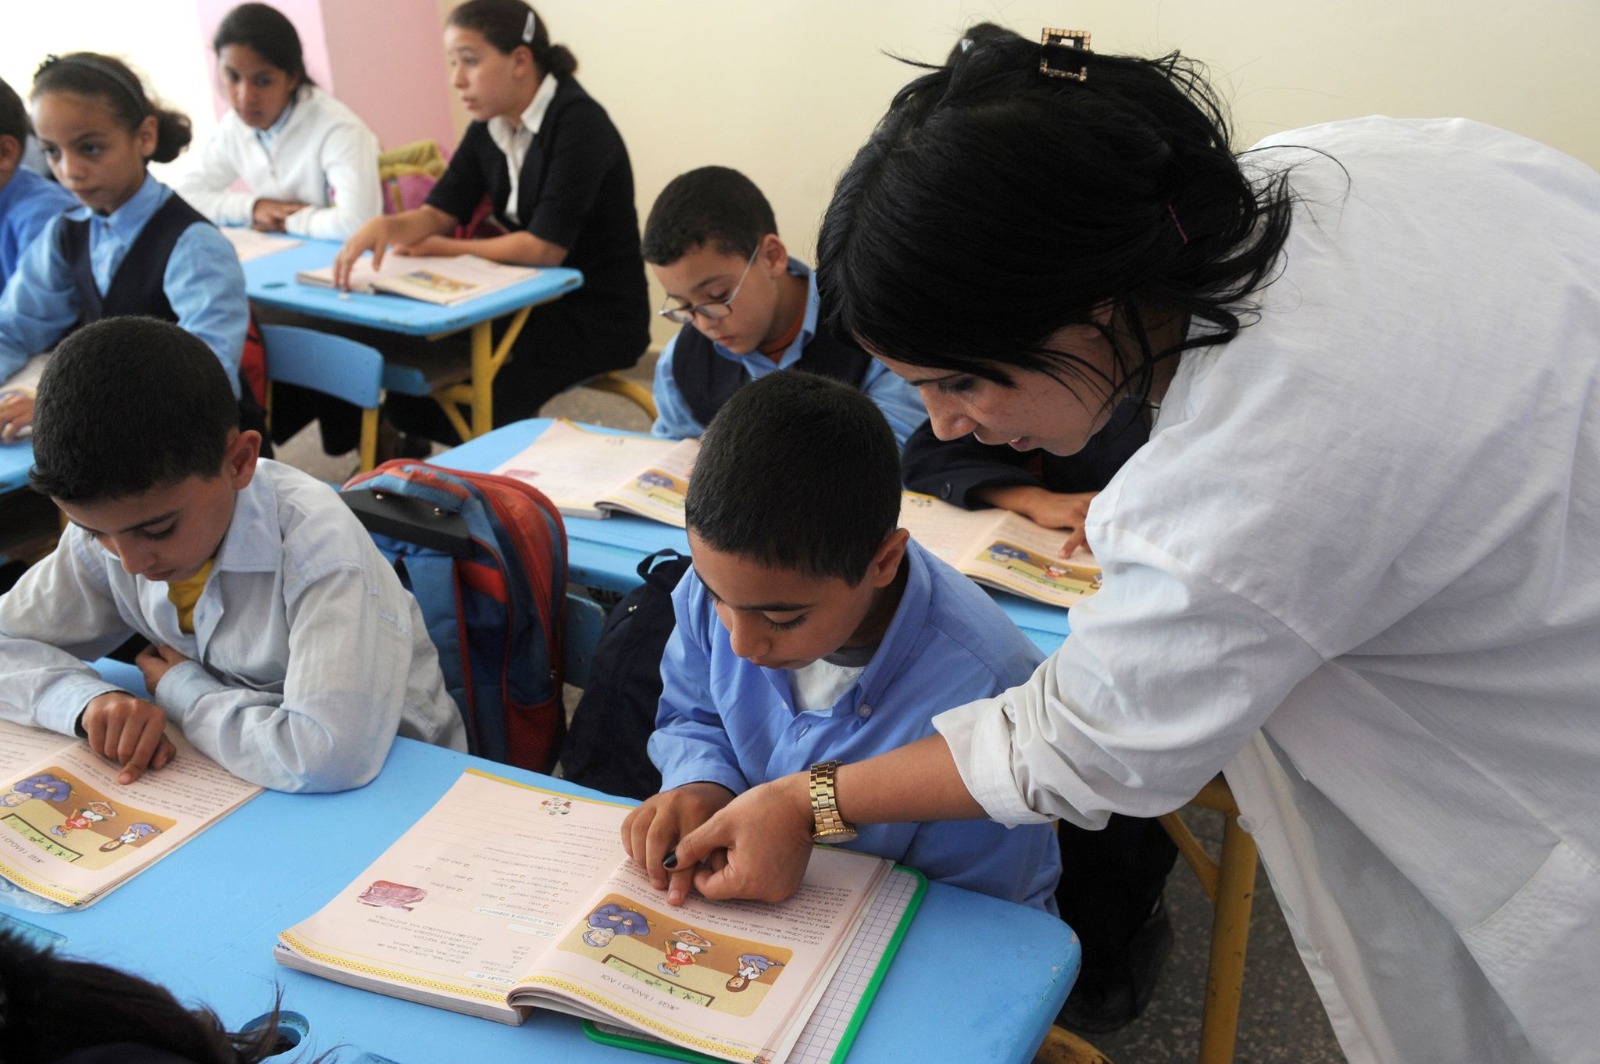 Le niveau des élèves marocains s’est dégradé par rapport à 2018.